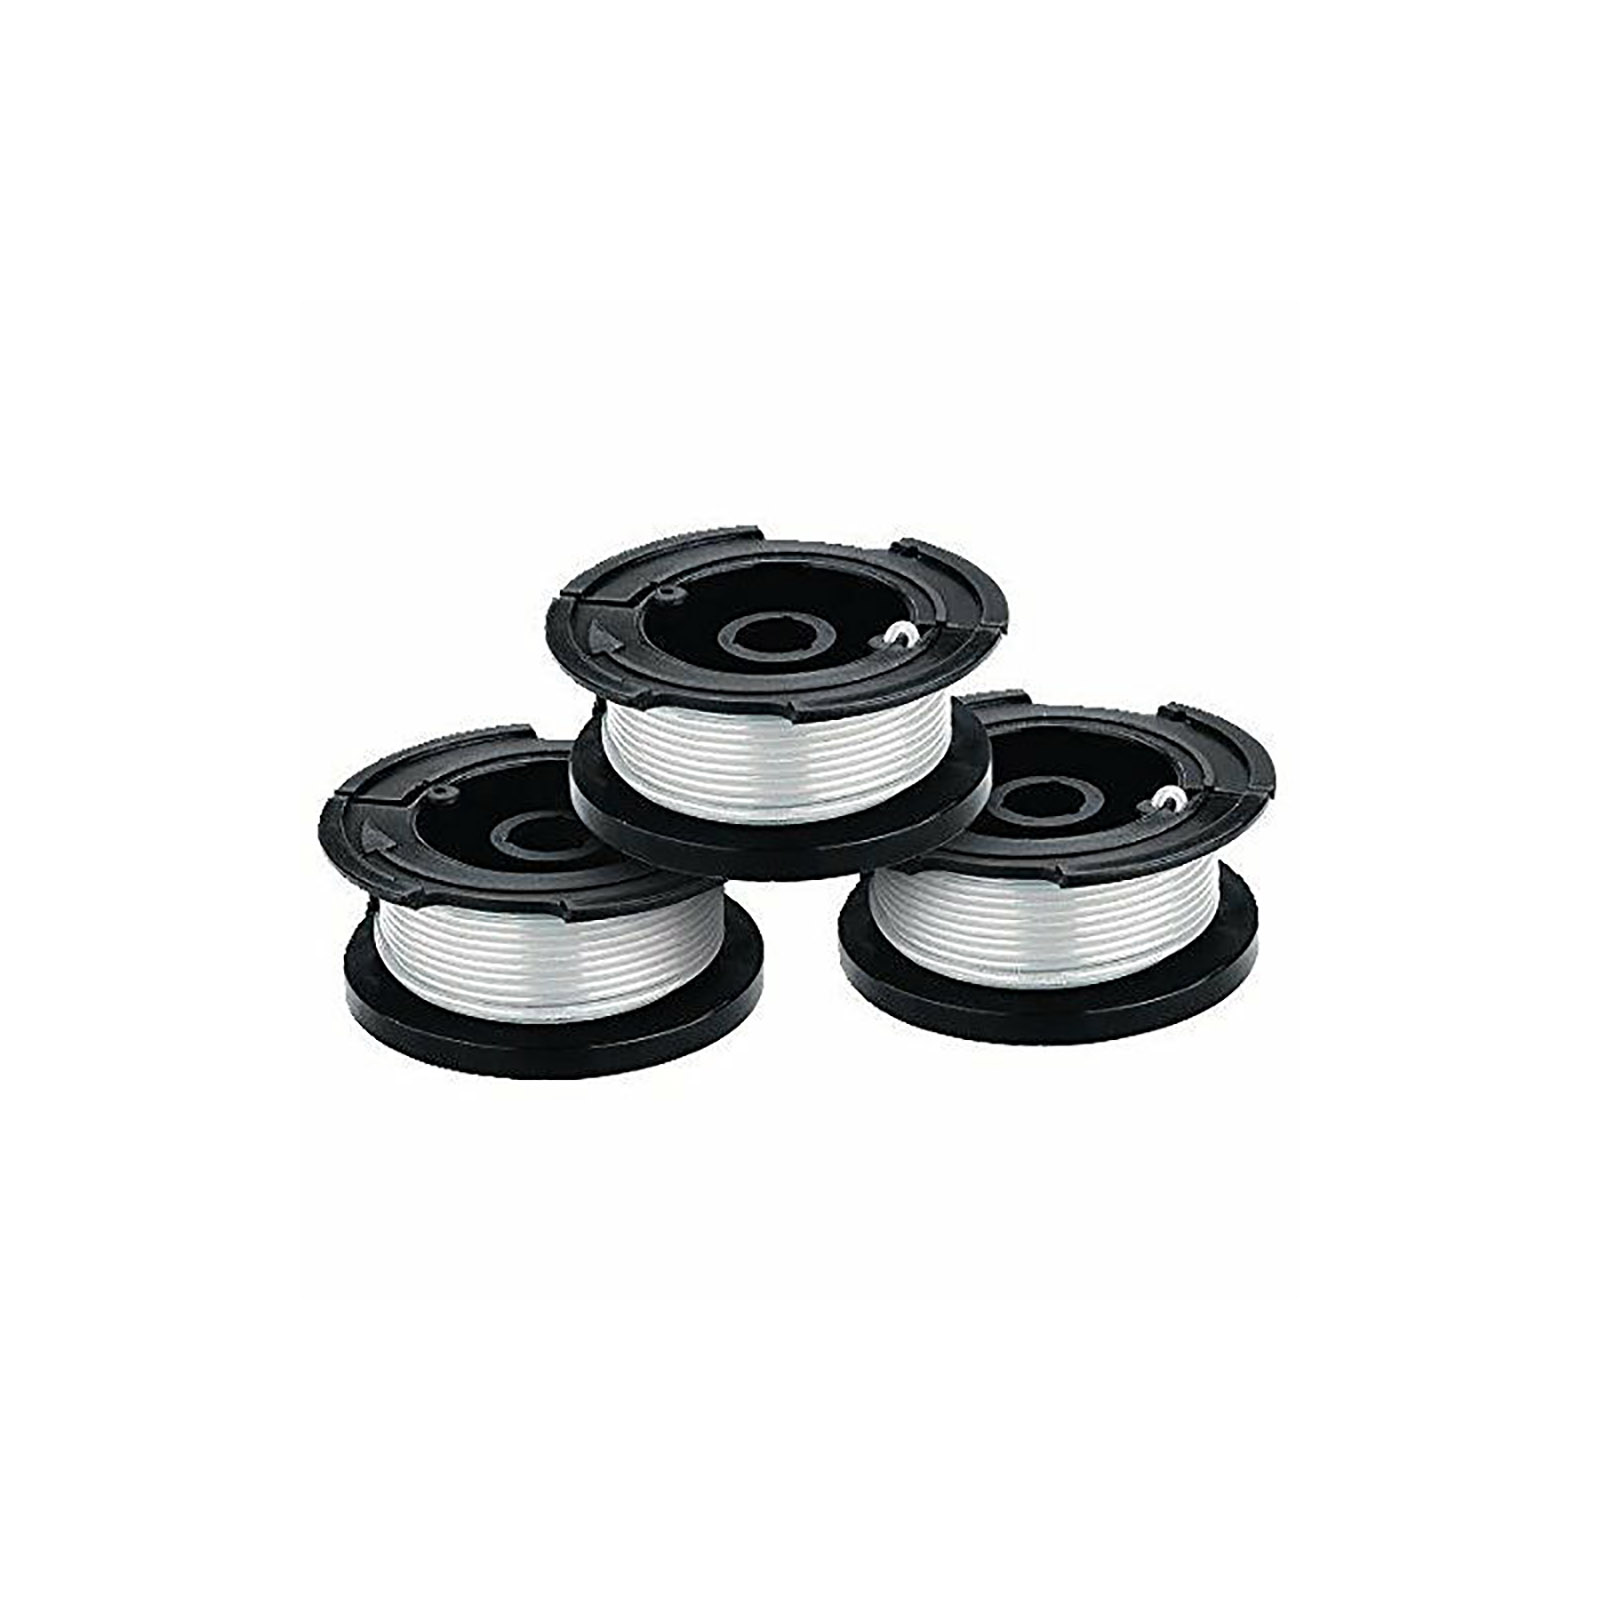 3 Pack Spool & Cap fits Black Decker AF-100-3ZP 30ft .065 String